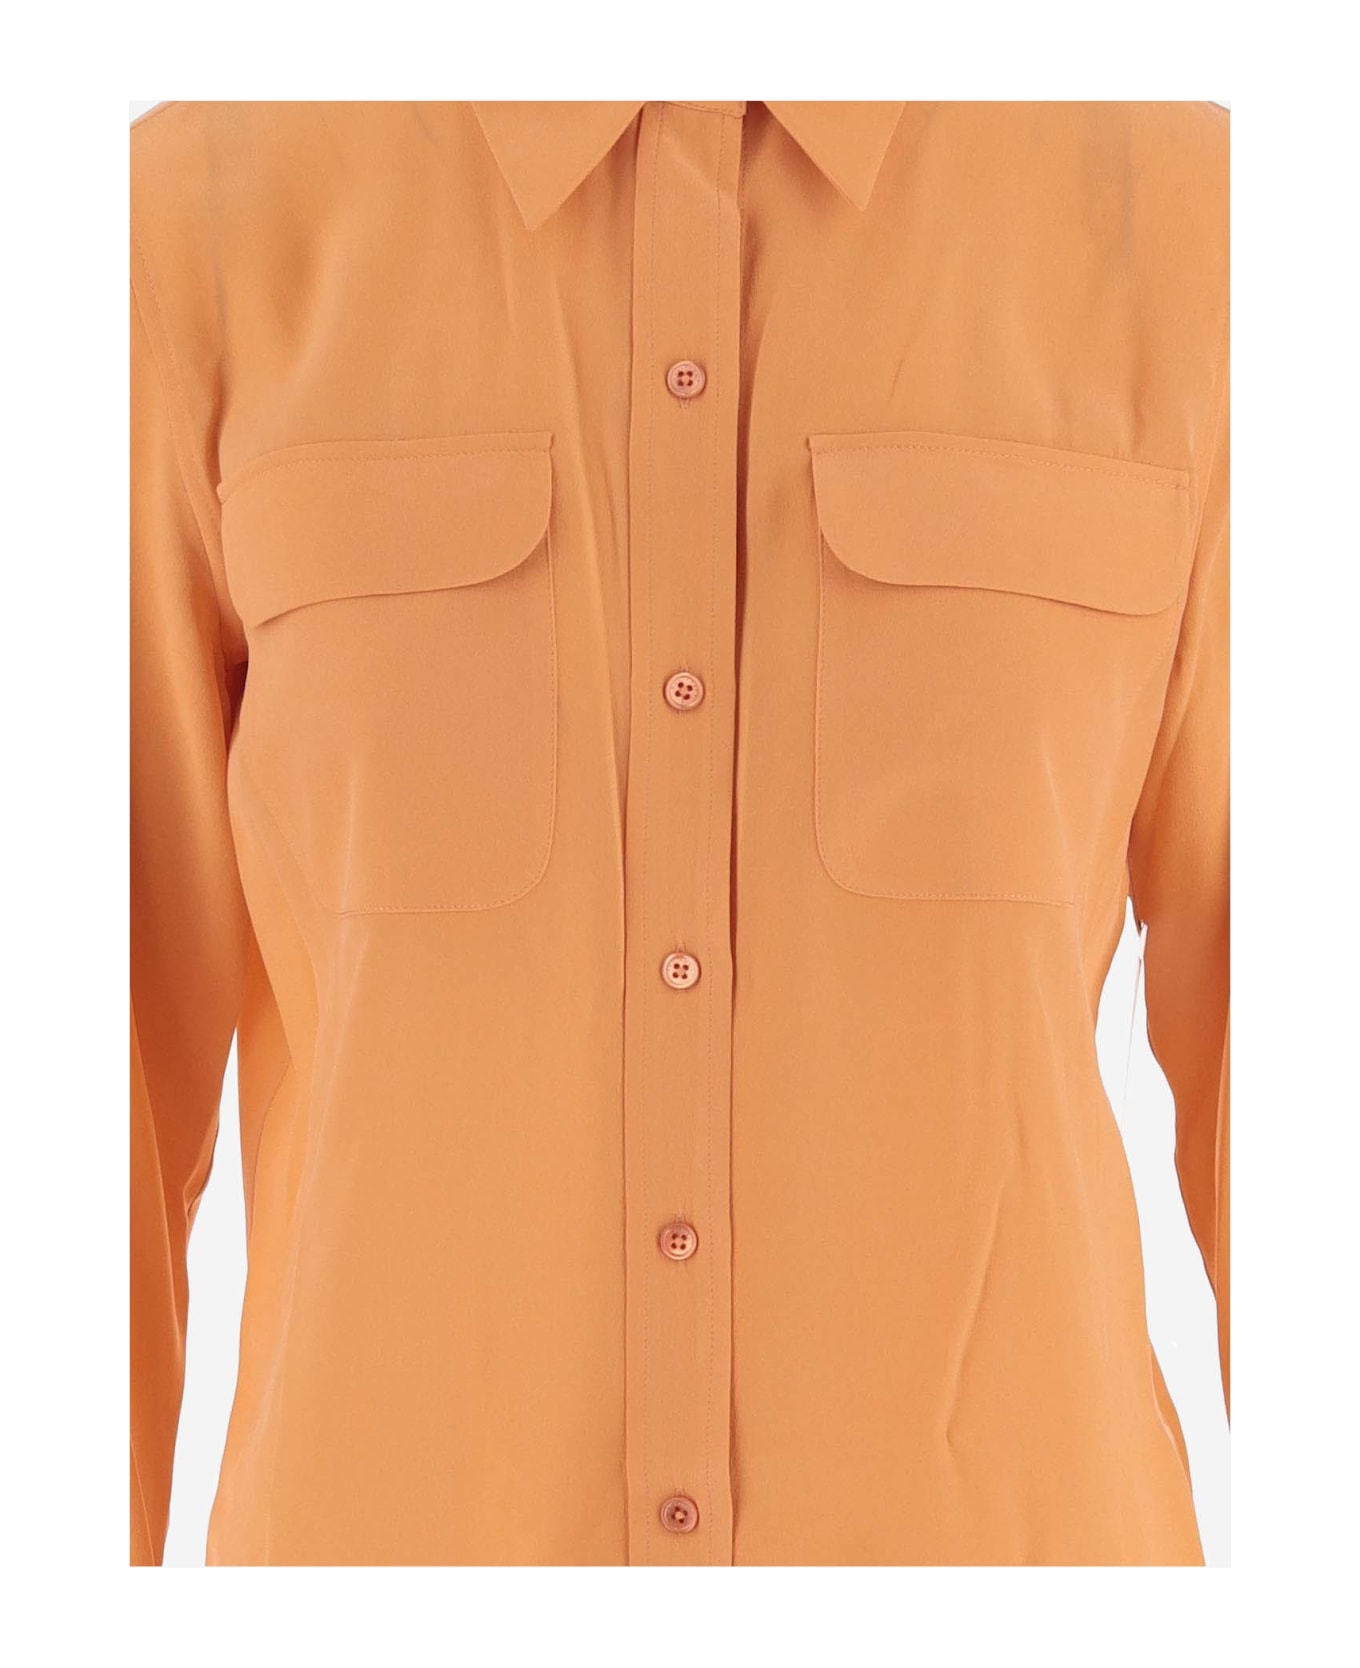 Equipment Silk Shirt - Orange